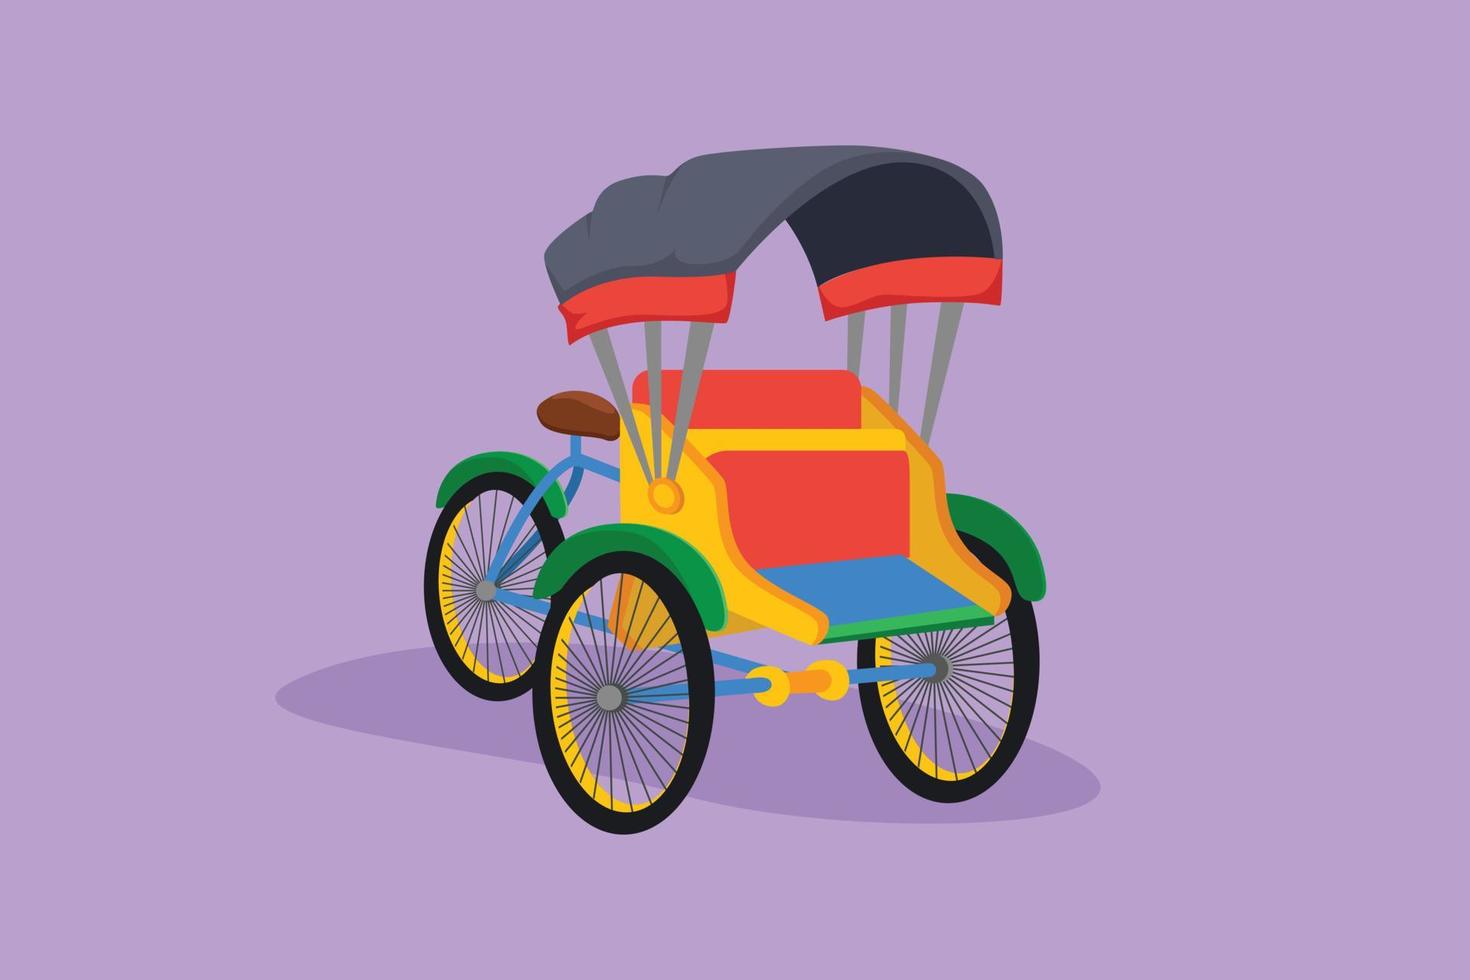 tekenfilm vlak stijl tekening fietstaxi met drie wielen en passagier stoel Bij voorkant en bestuurder controle Bij de achterzijde vaak gevonden in Indonesië. traditioneel vervoer. grafisch ontwerp vector illustratie